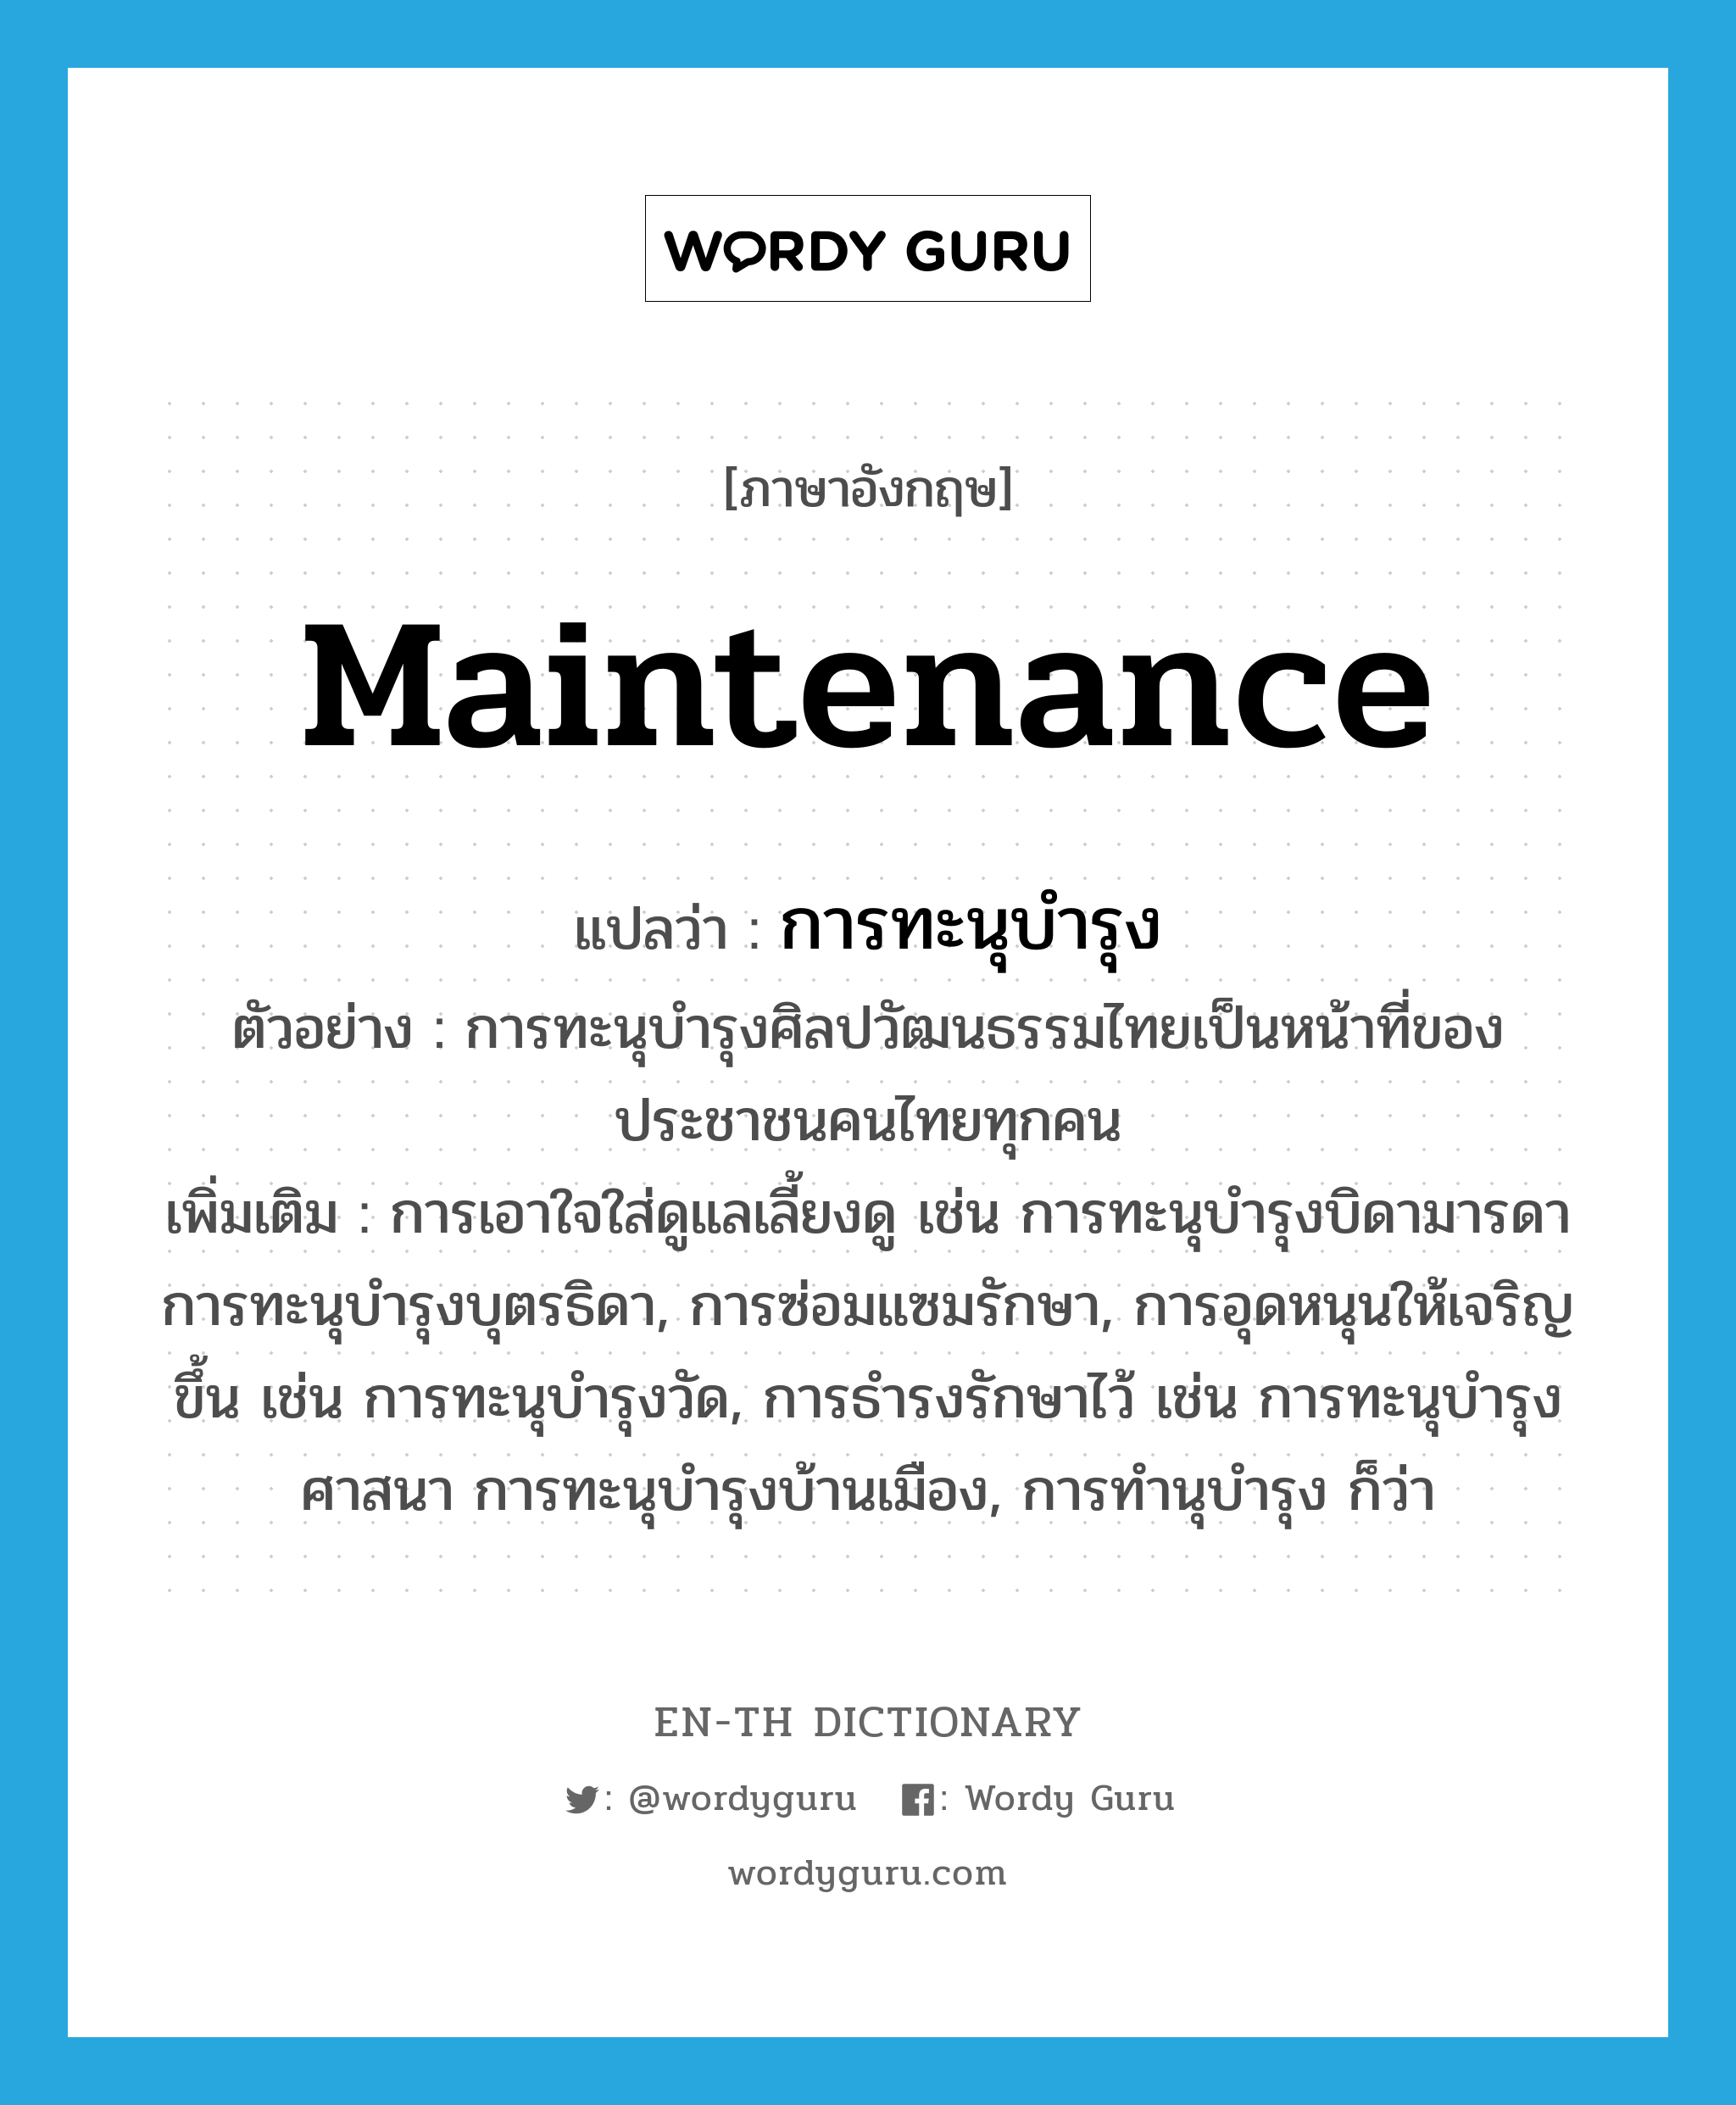 maintenance แปลว่า?, คำศัพท์ภาษาอังกฤษ maintenance แปลว่า การทะนุบำรุง ประเภท N ตัวอย่าง การทะนุบำรุงศิลปวัฒนธรรมไทยเป็นหน้าที่ของประชาชนคนไทยทุกคน เพิ่มเติม การเอาใจใส่ดูแลเลี้ยงดู เช่น การทะนุบำรุงบิดามารดา การทะนุบำรุงบุตรธิดา, การซ่อมแซมรักษา, การอุดหนุนให้เจริญขึ้น เช่น การทะนุบำรุงวัด, การธำรงรักษาไว้ เช่น การทะนุบำรุงศาสนา การทะนุบำรุงบ้านเมือง, การทำนุบำรุง ก็ว่า หมวด N